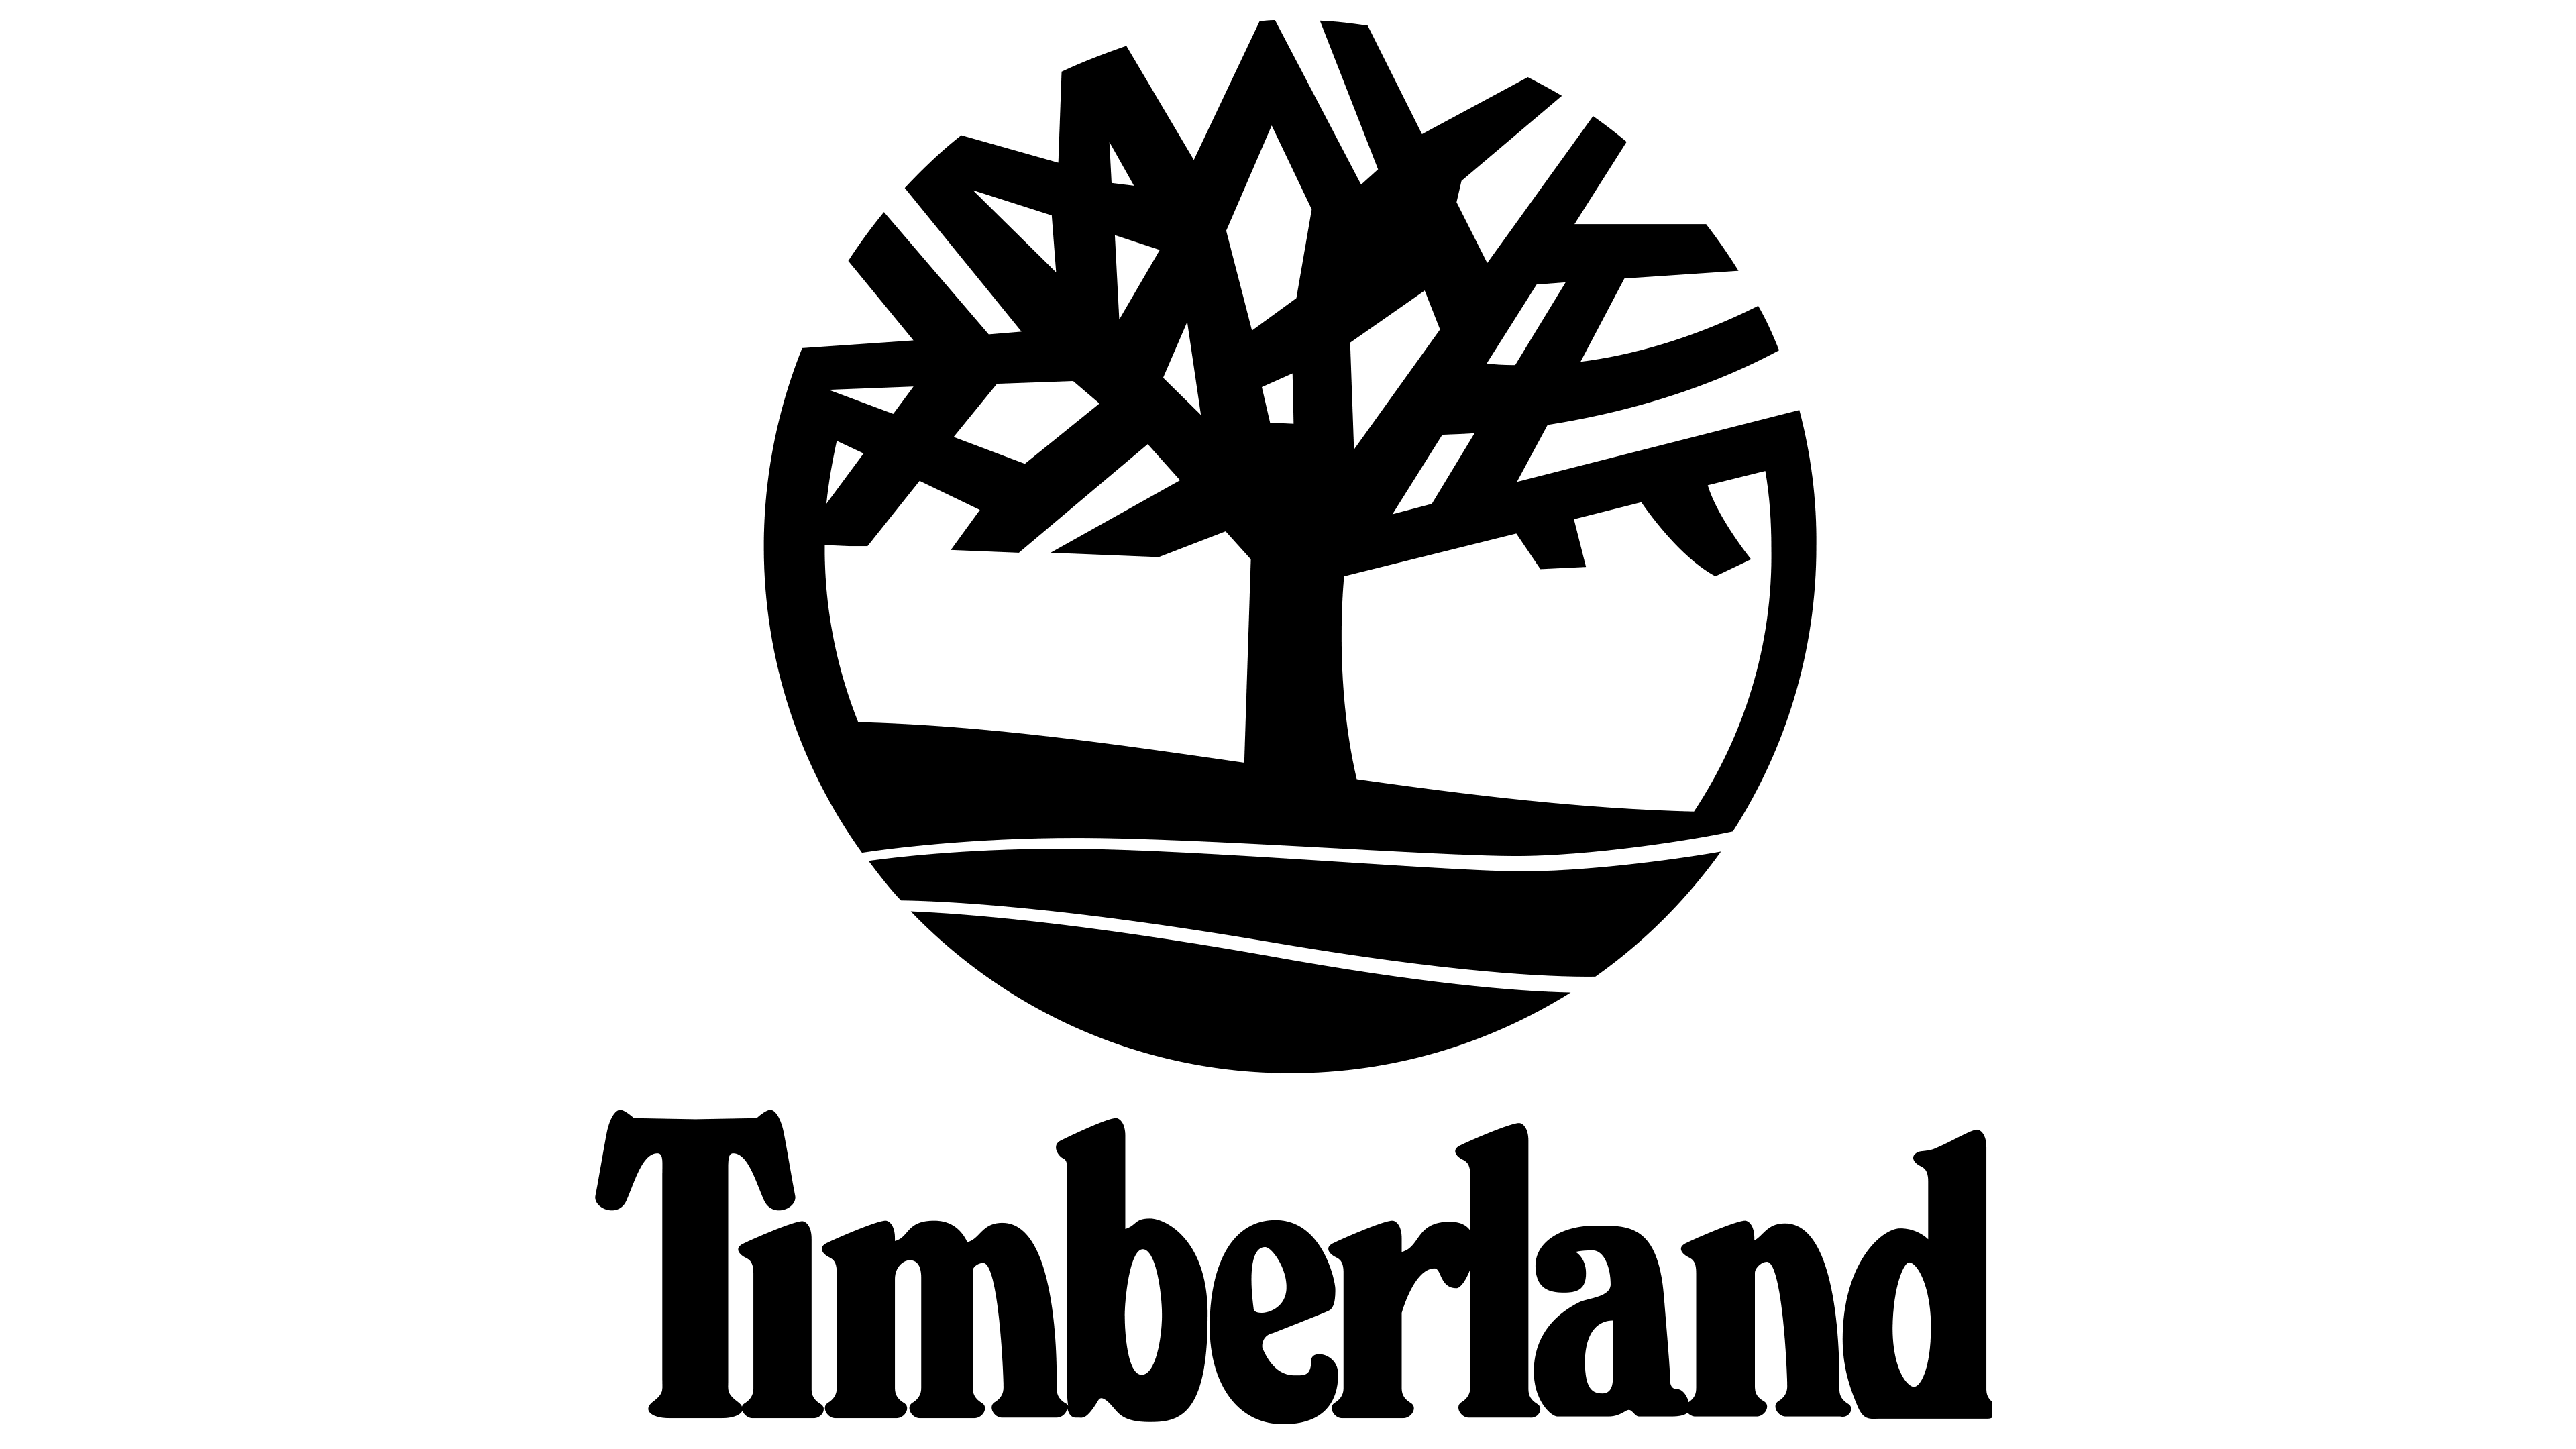 Logo De Timberland La Historia Y El Significado Del Logotipo La Marca ...